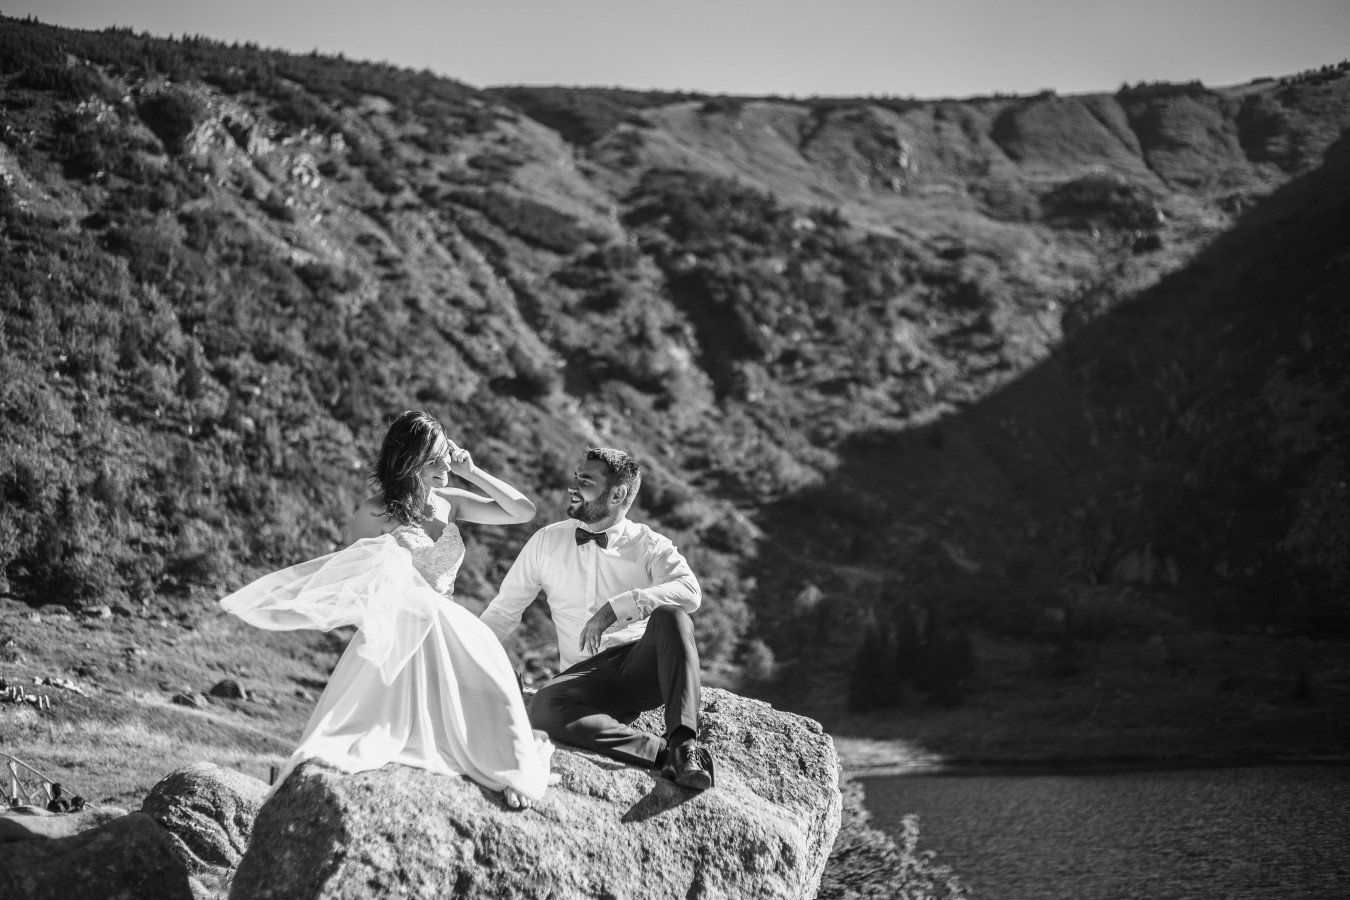 fotograf zielona-gora zuczek-film portfolio zdjecia slubne inspiracje wesele plener slubny sesja slubna